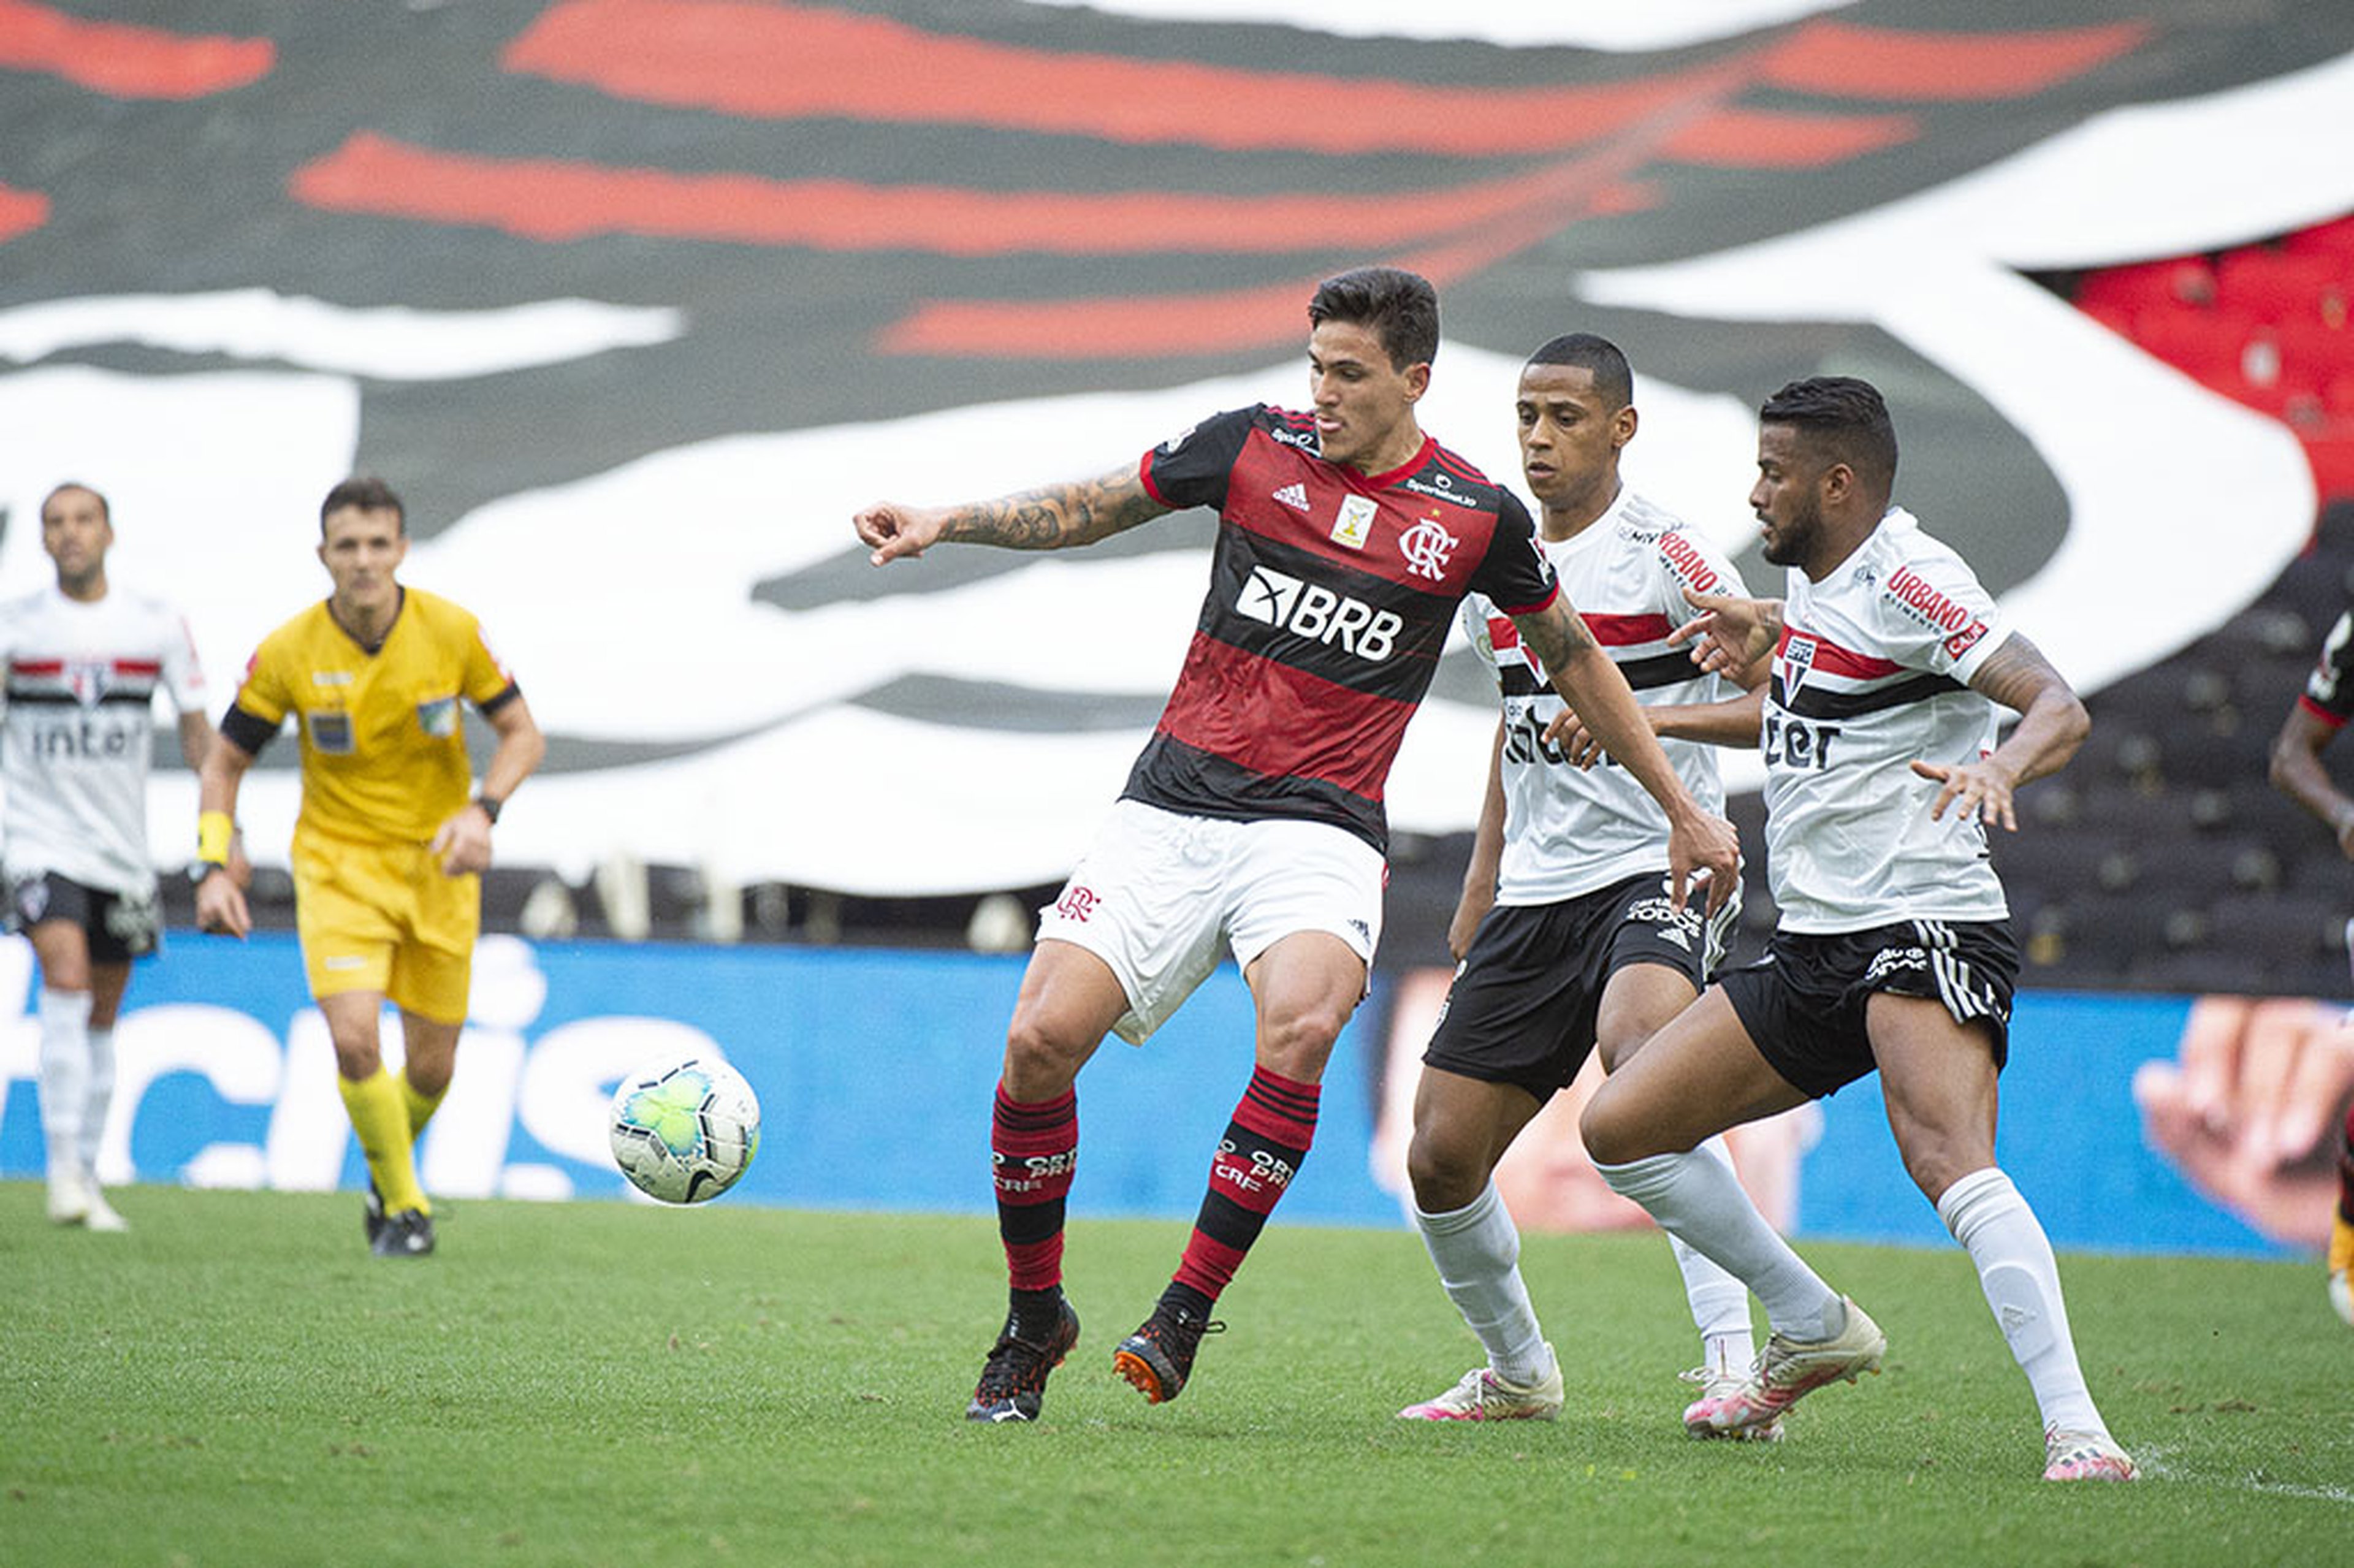 Alexandre Vidal/Flamengo, Divulgação